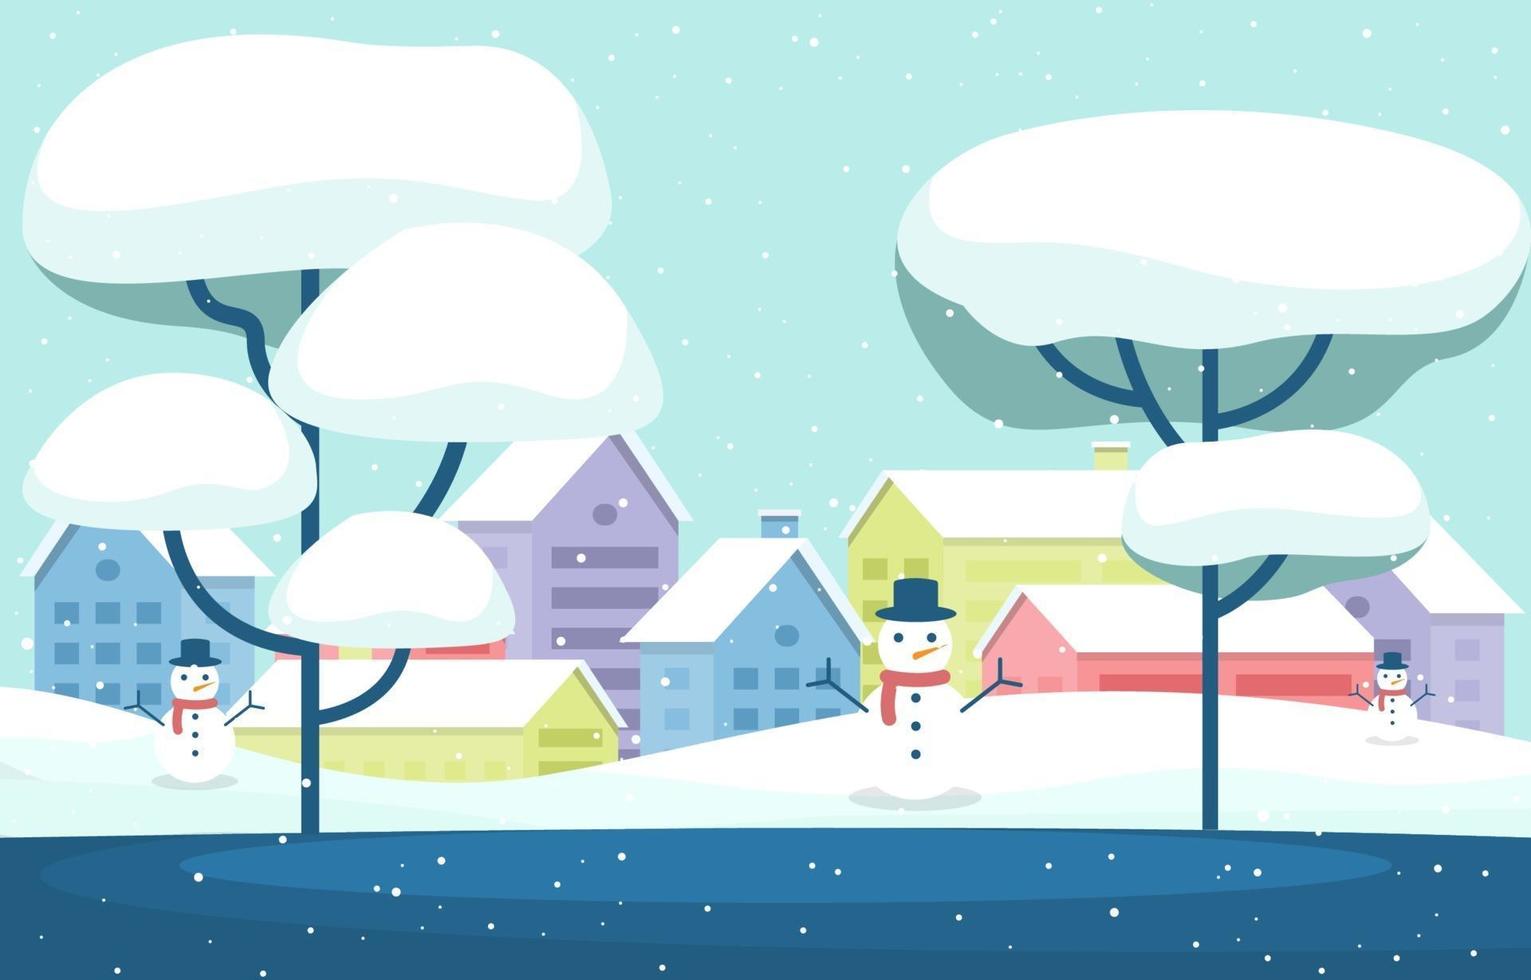 acogedora escena de la ciudad de invierno cubierto de nieve con árboles, casas y muñecos de nieve vector